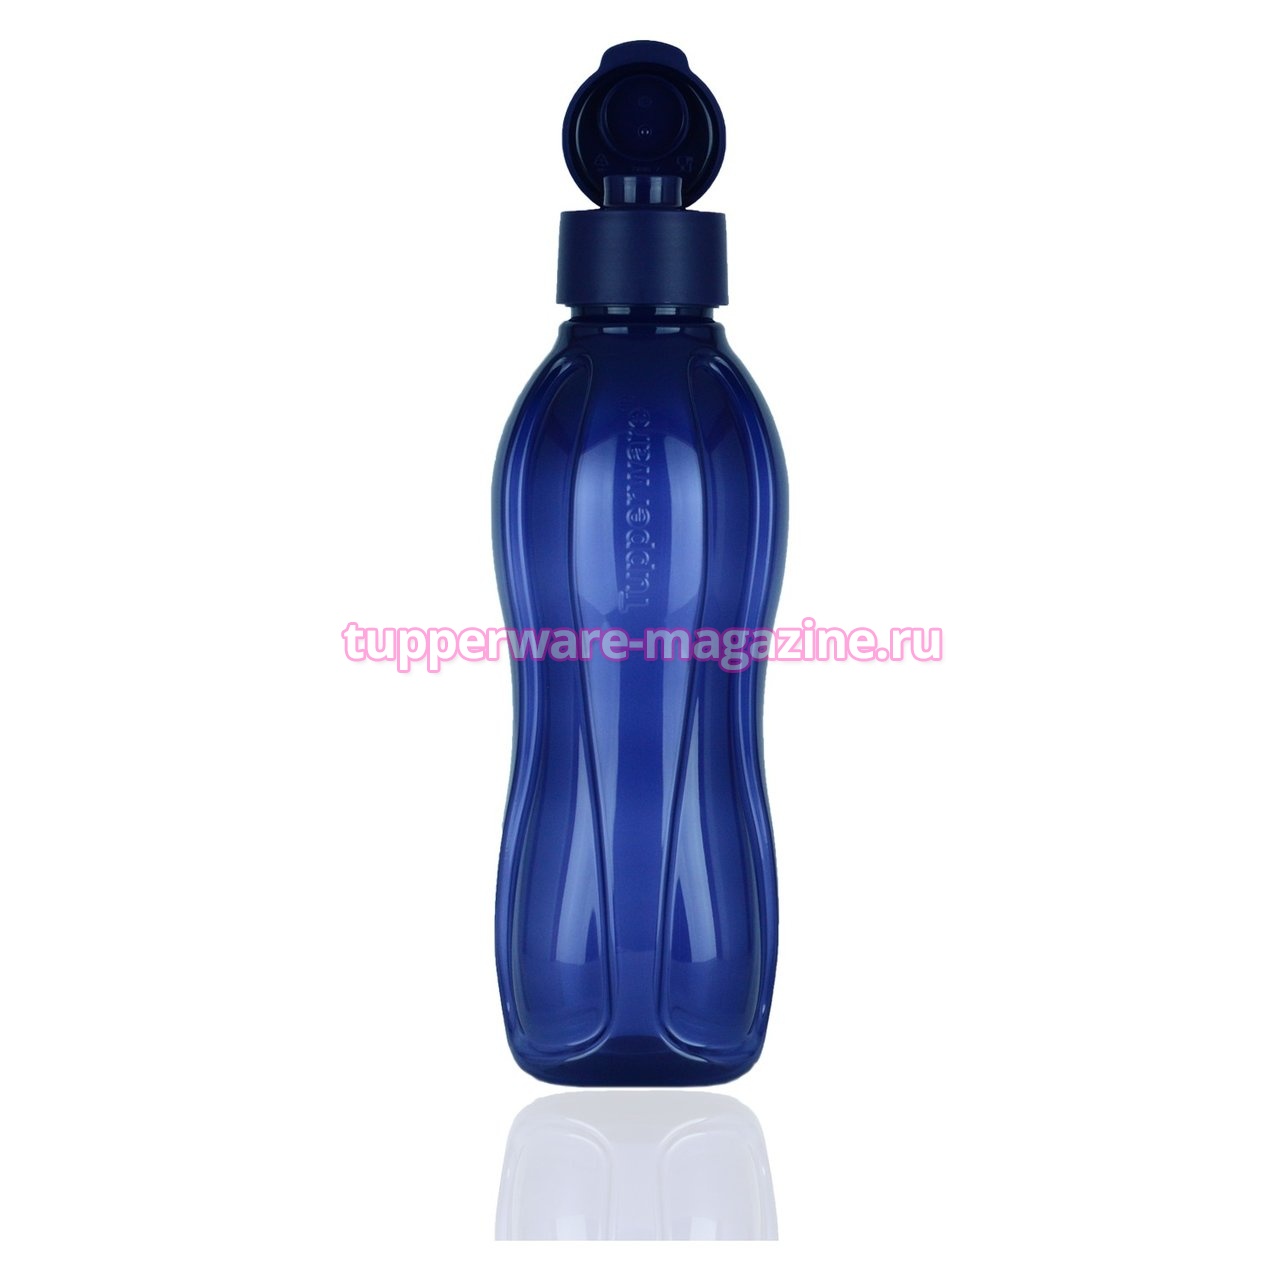 Эко-бутылка (500 мл) в синем цвете с клапаном